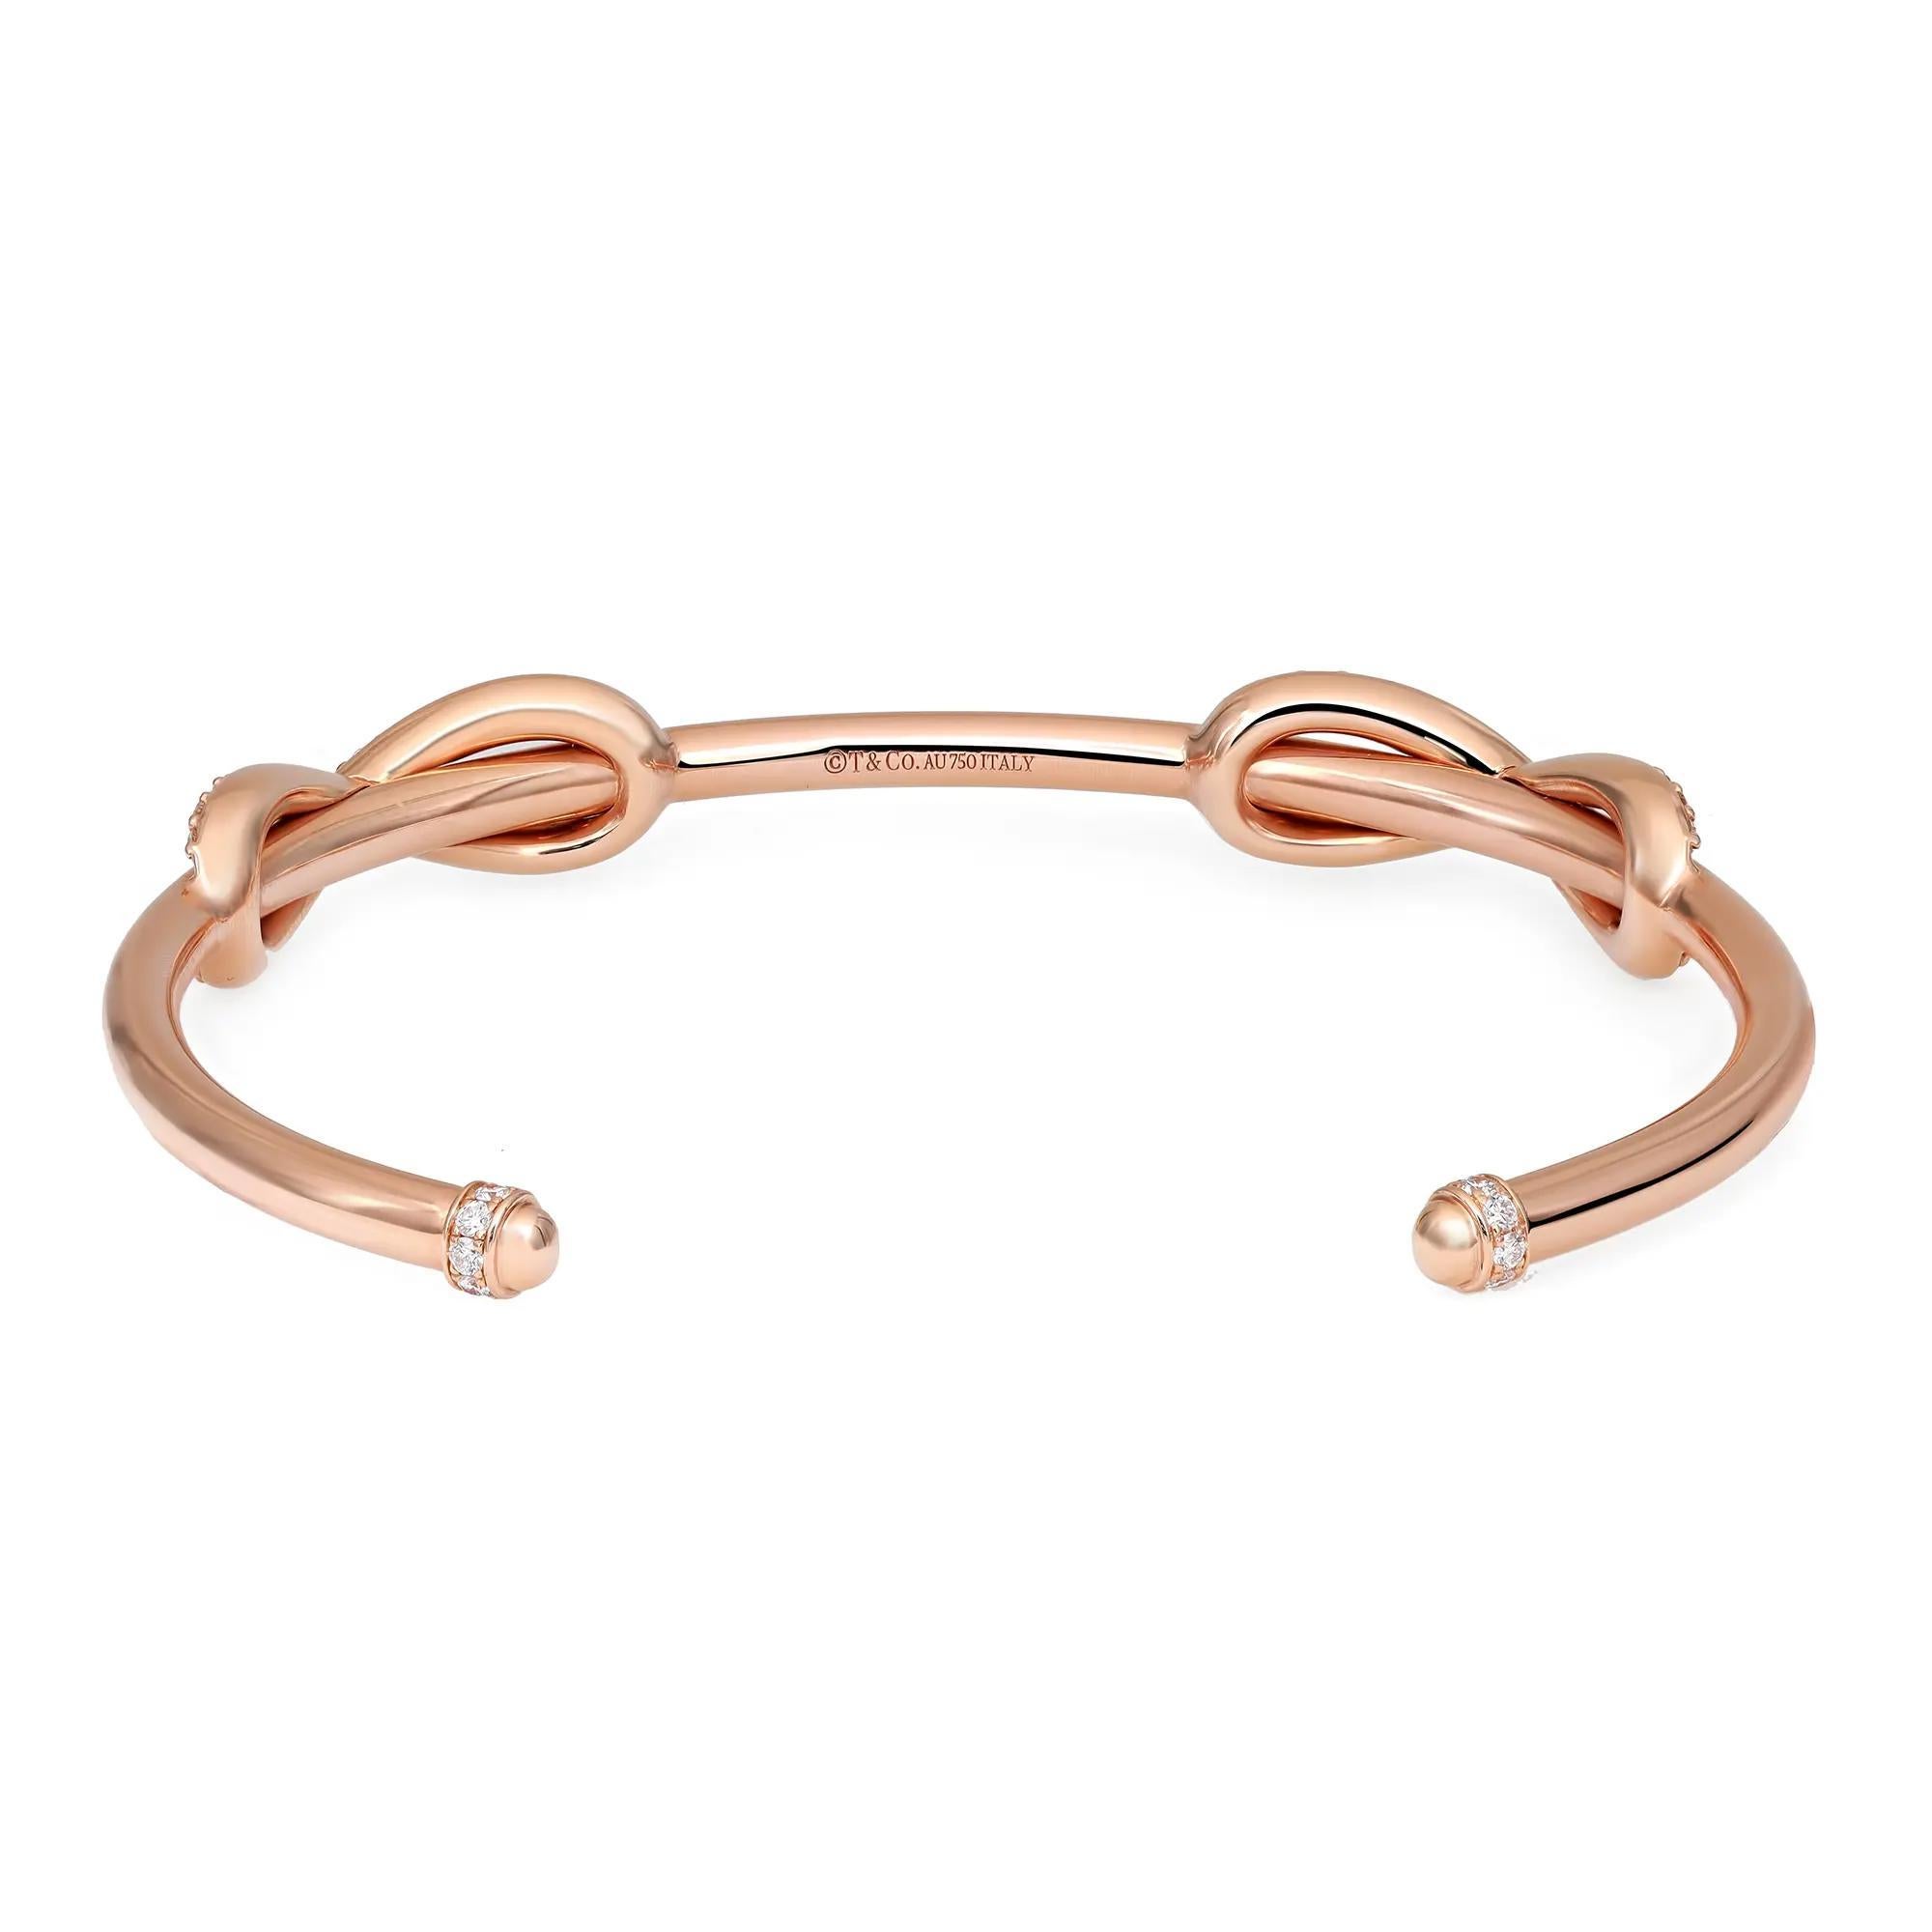 Ce magnifique bracelet manchette Tiffany & Co. est réalisé en or rose massif 18K. Il présente un double design en forme d'infini incrusté de diamants ronds de taille brillant d'un blanc éclatant et d'une brillance exceptionnelle. Ce bracelet